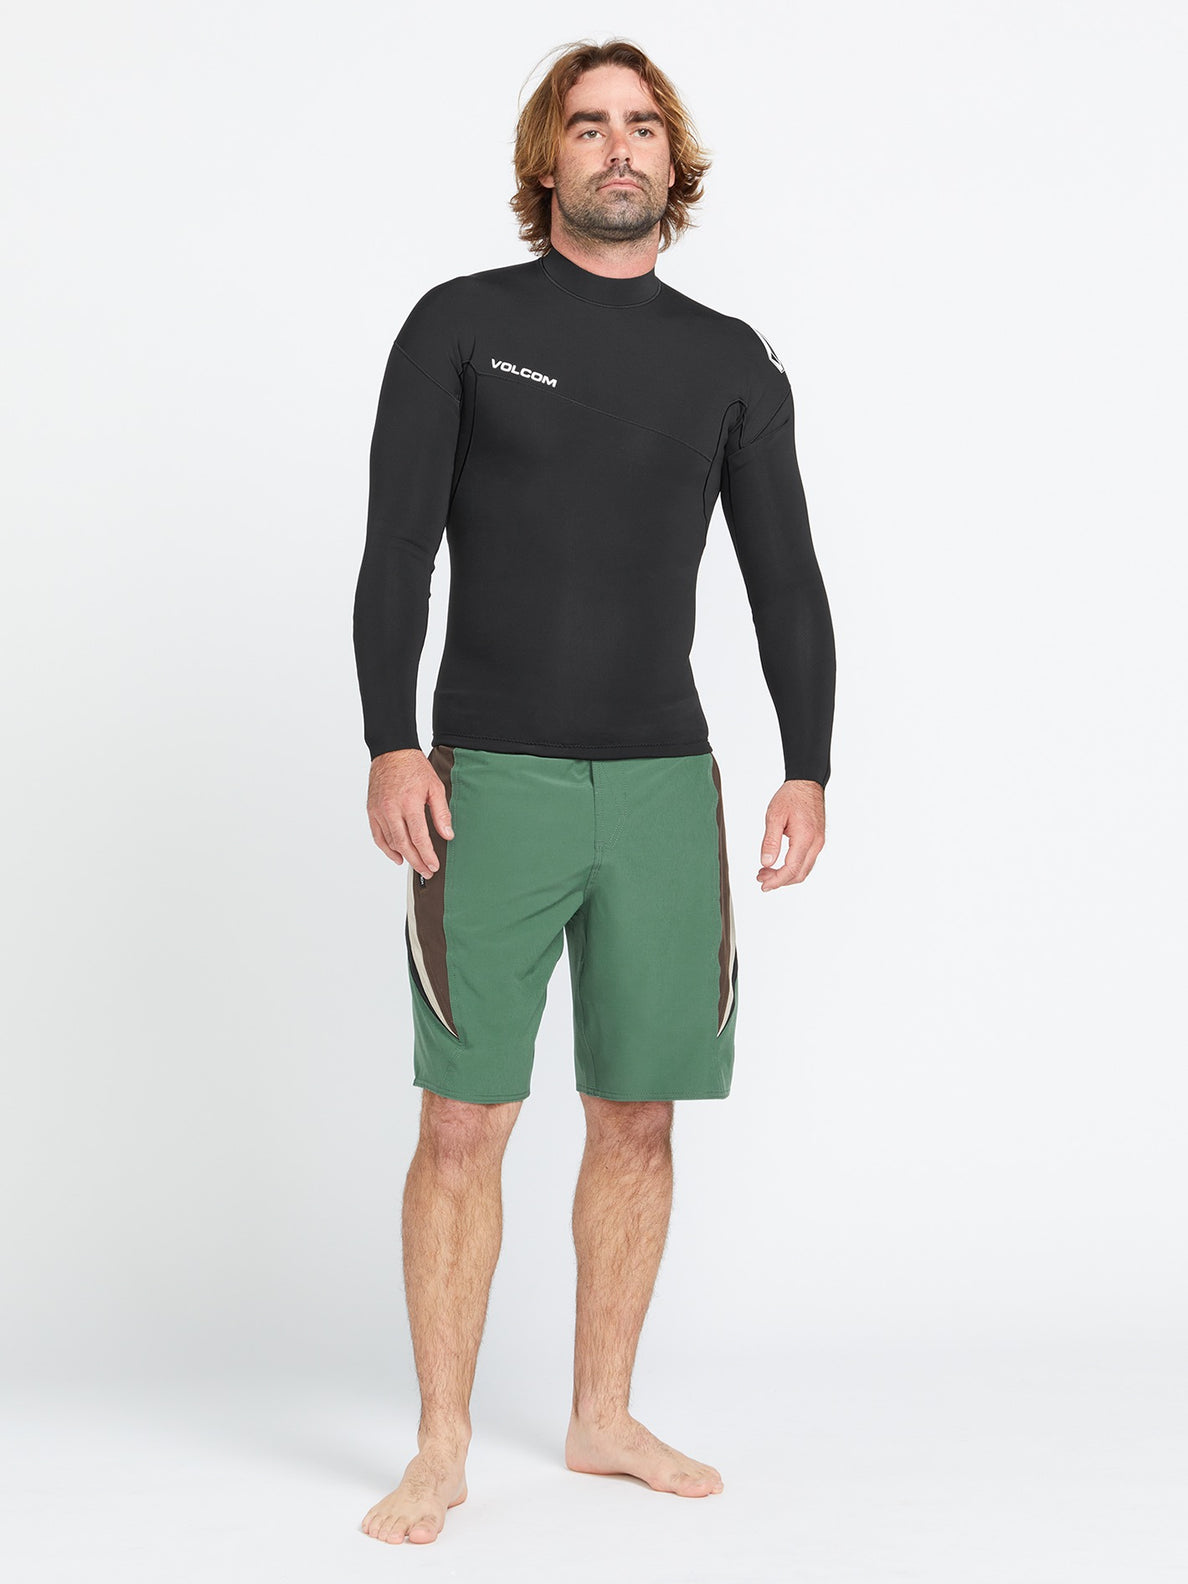 Surf Vitals J Robinson Mod-Tech Boardshorts - Fir Green